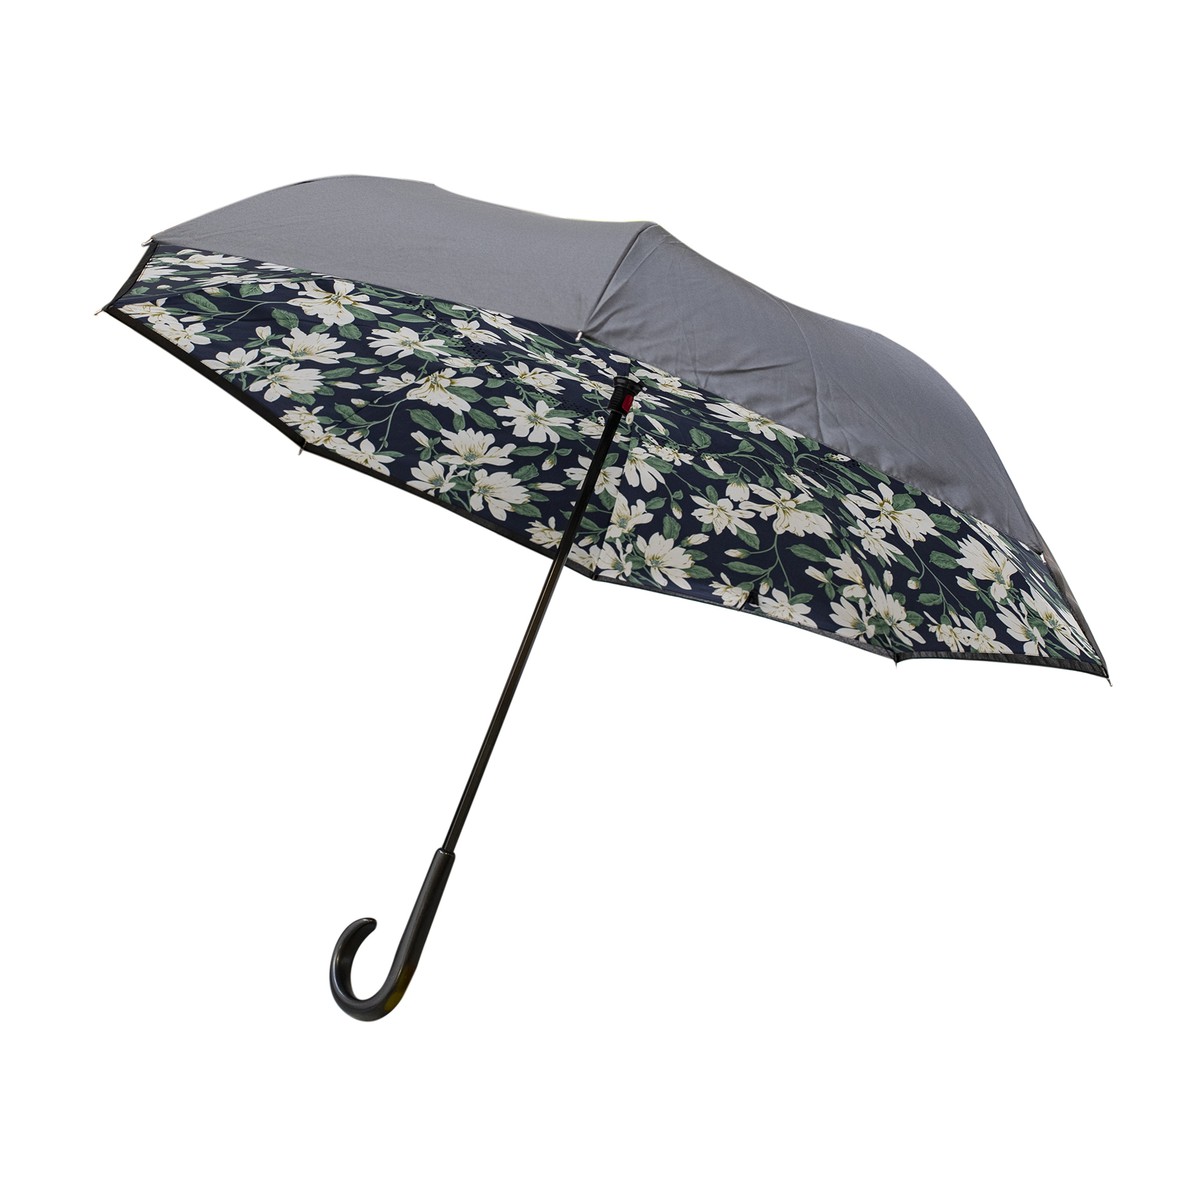   Parapluie Noumea  